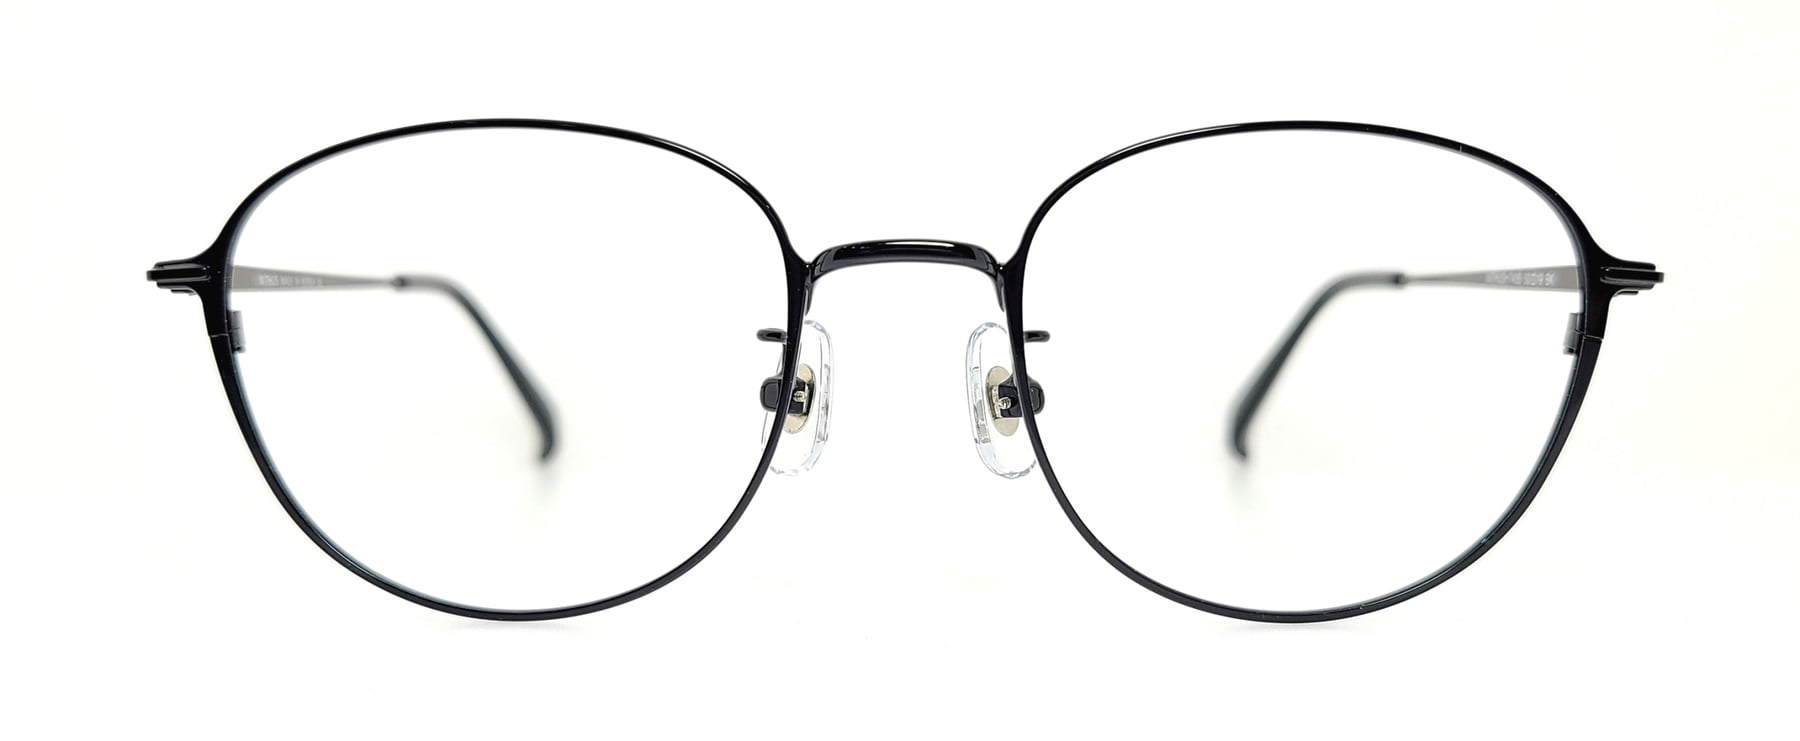 WITHUS-7435, Korean glasses, sunglasses, eyeglasses, glasses